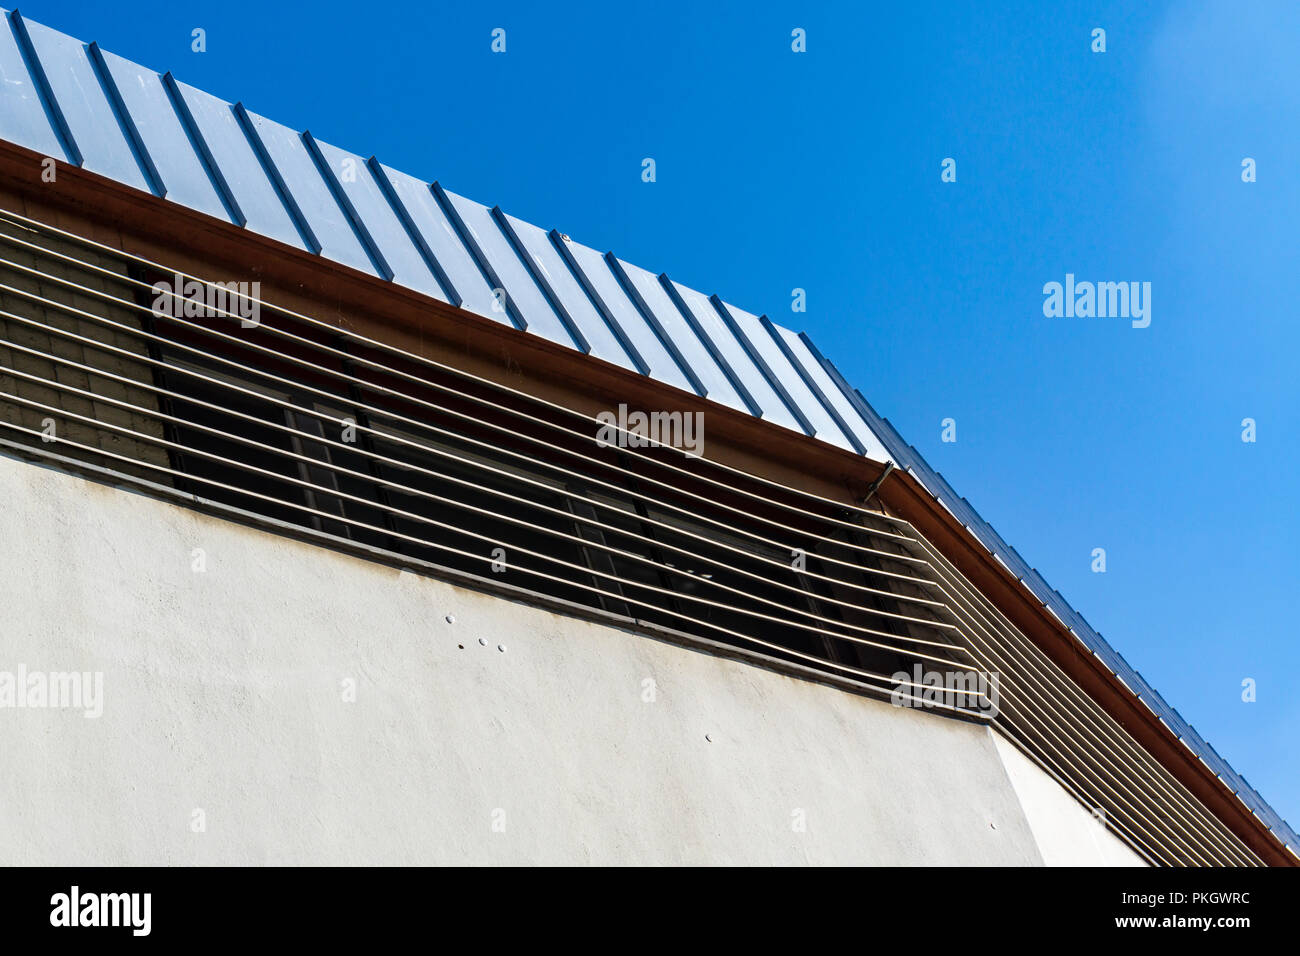 Berlino, Germania, 26 Luglio 2018: Close-Up della caratteristica architettonica del tetto del magazzino Foto Stock